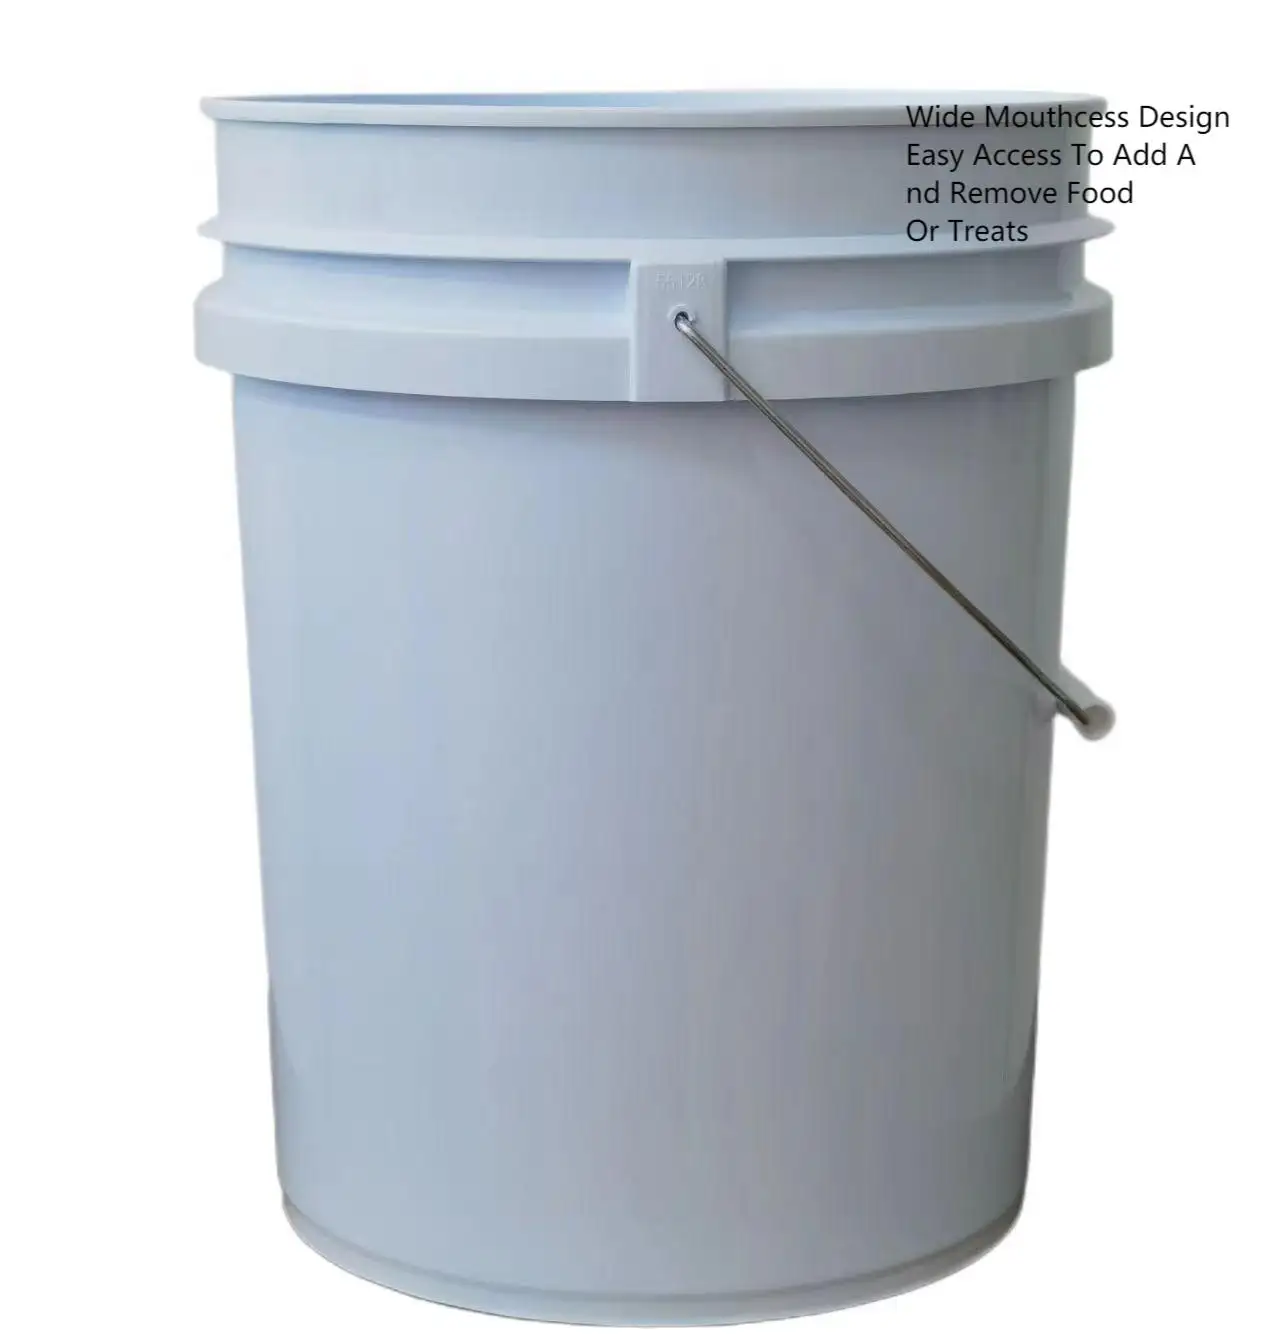 Secchio da 5 galloni con manico confortevole secchio in plastica resistente contenitore facile da pulire perfetto per la pulizia della casa contiene